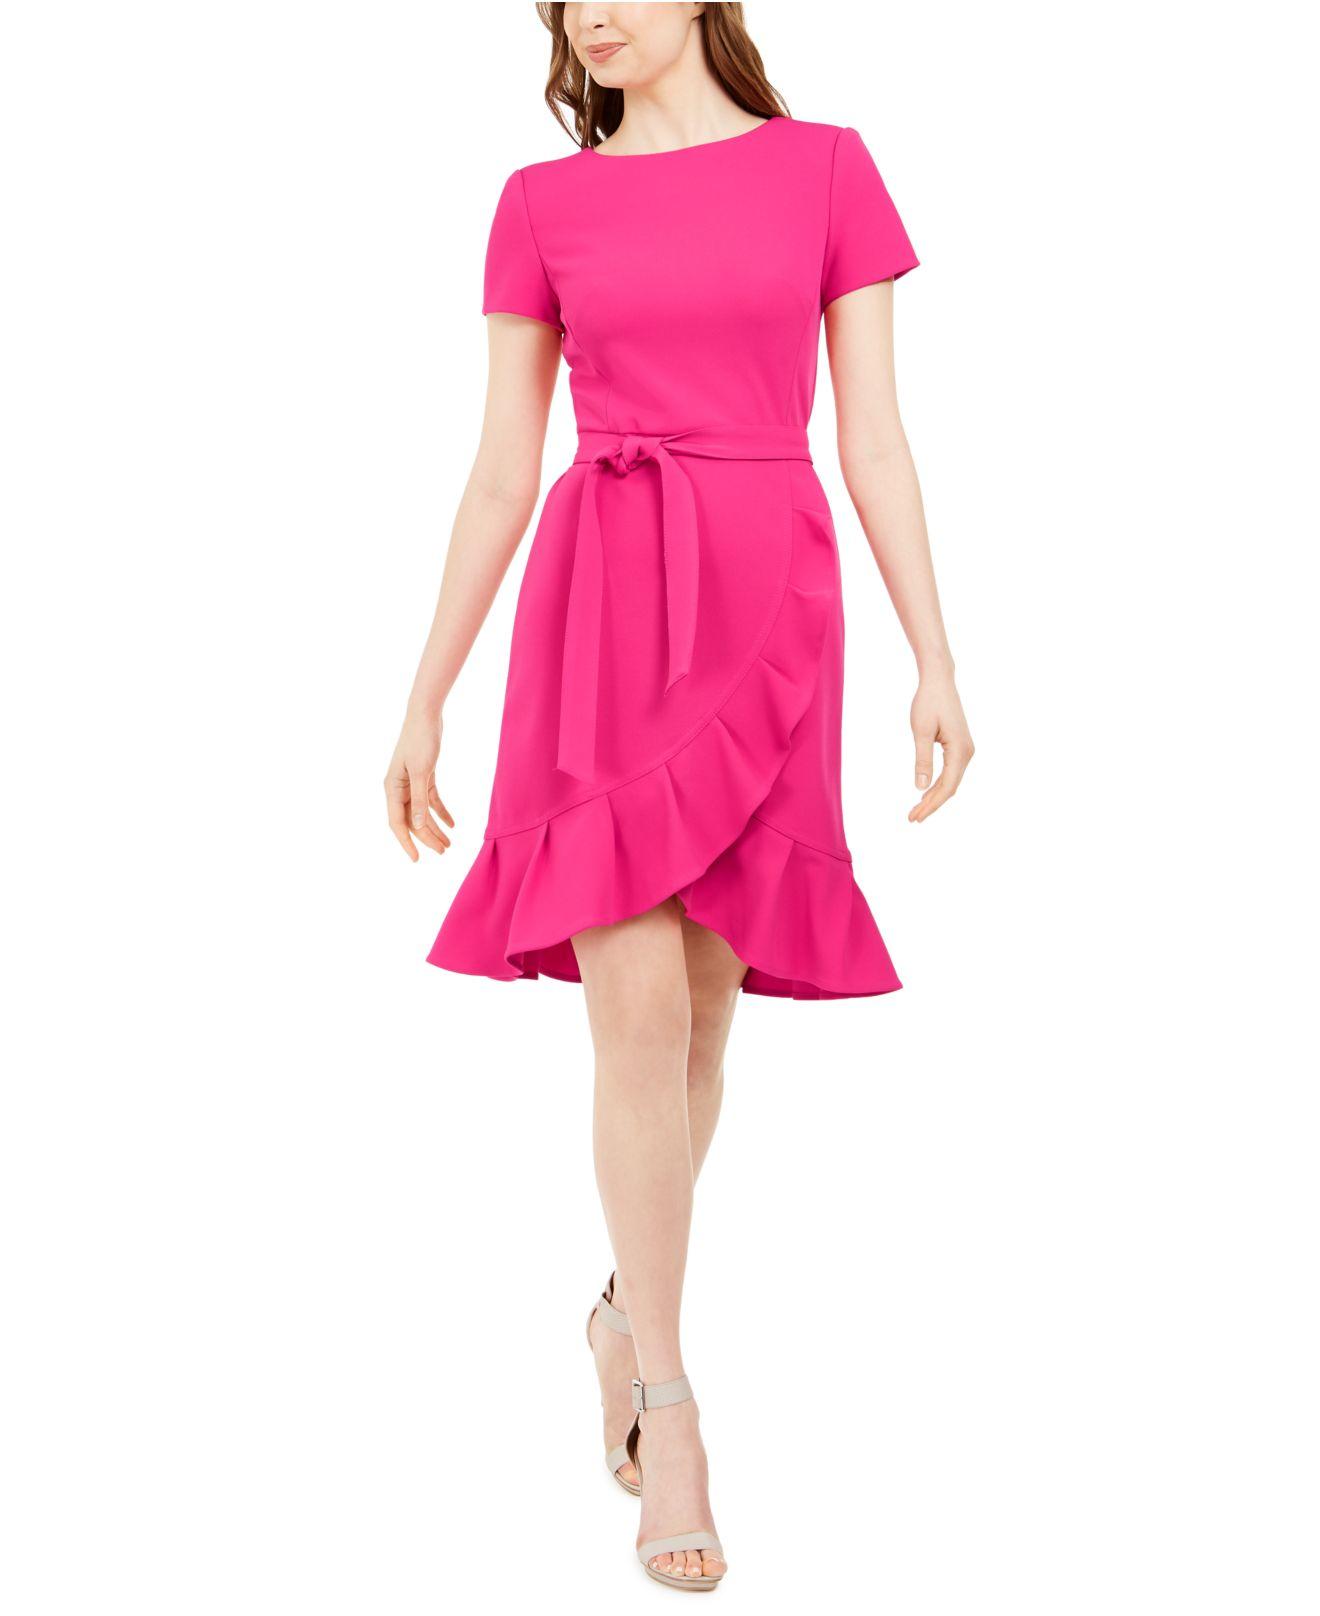 Introducir 51+ imagen calvin klein pink ruffle dress